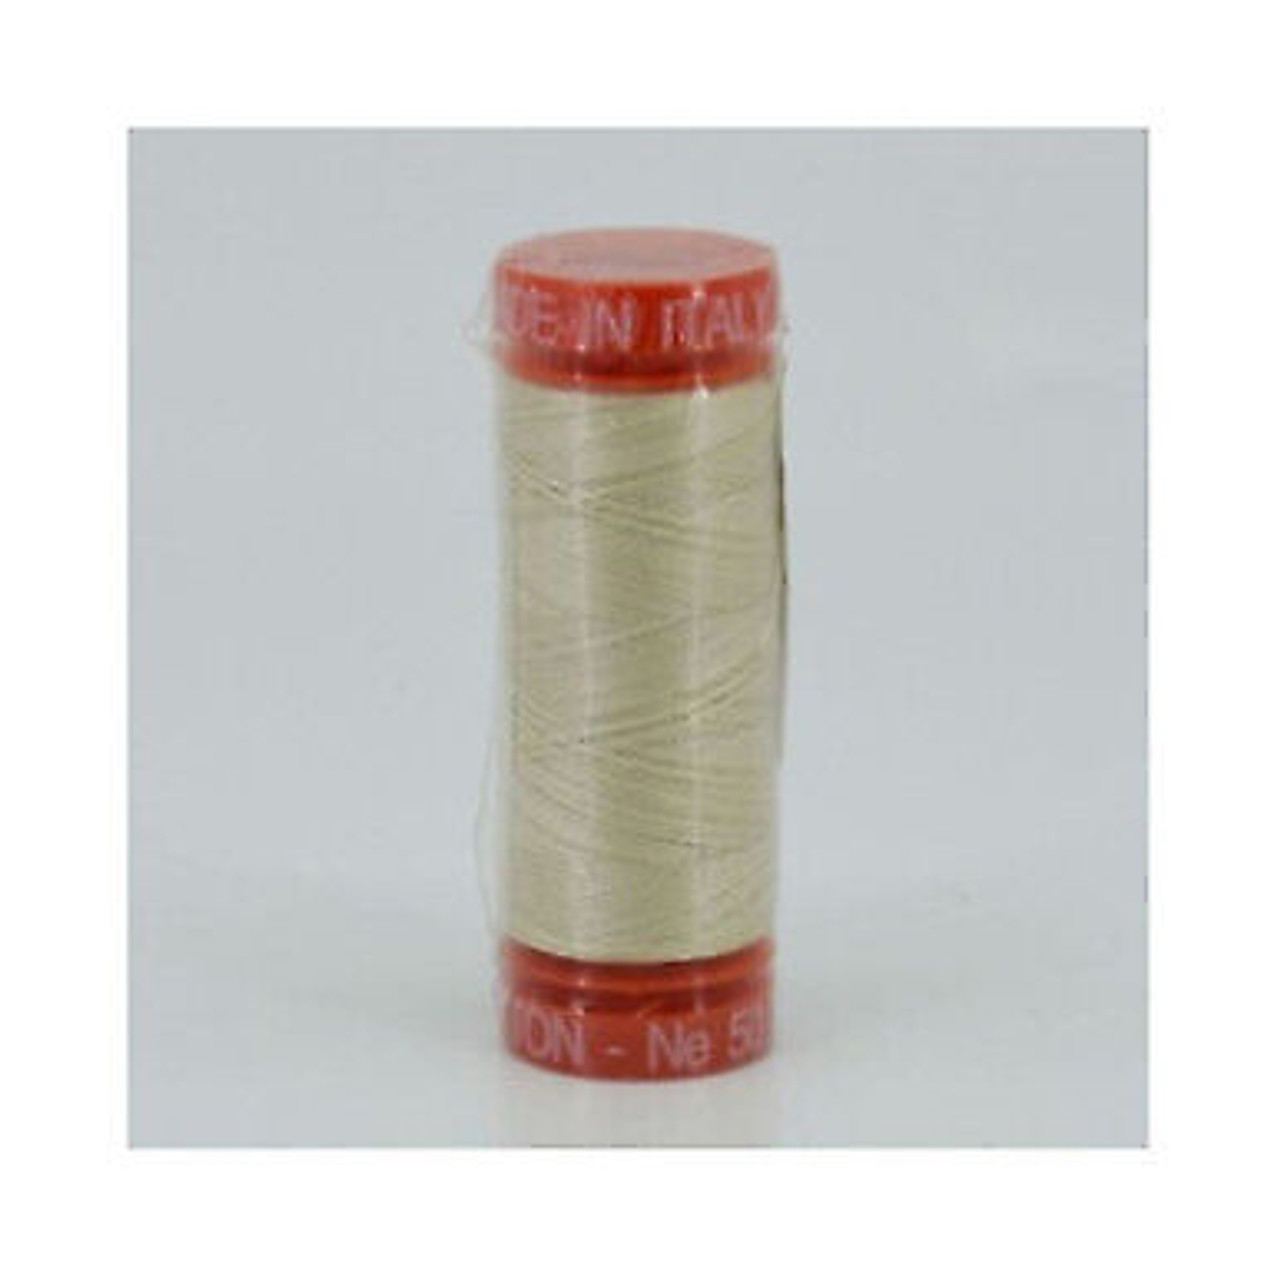 Aurifil 2310 Light Beige Cotton Thread Quilt Sewing 50 Wt Mako 220 Yds